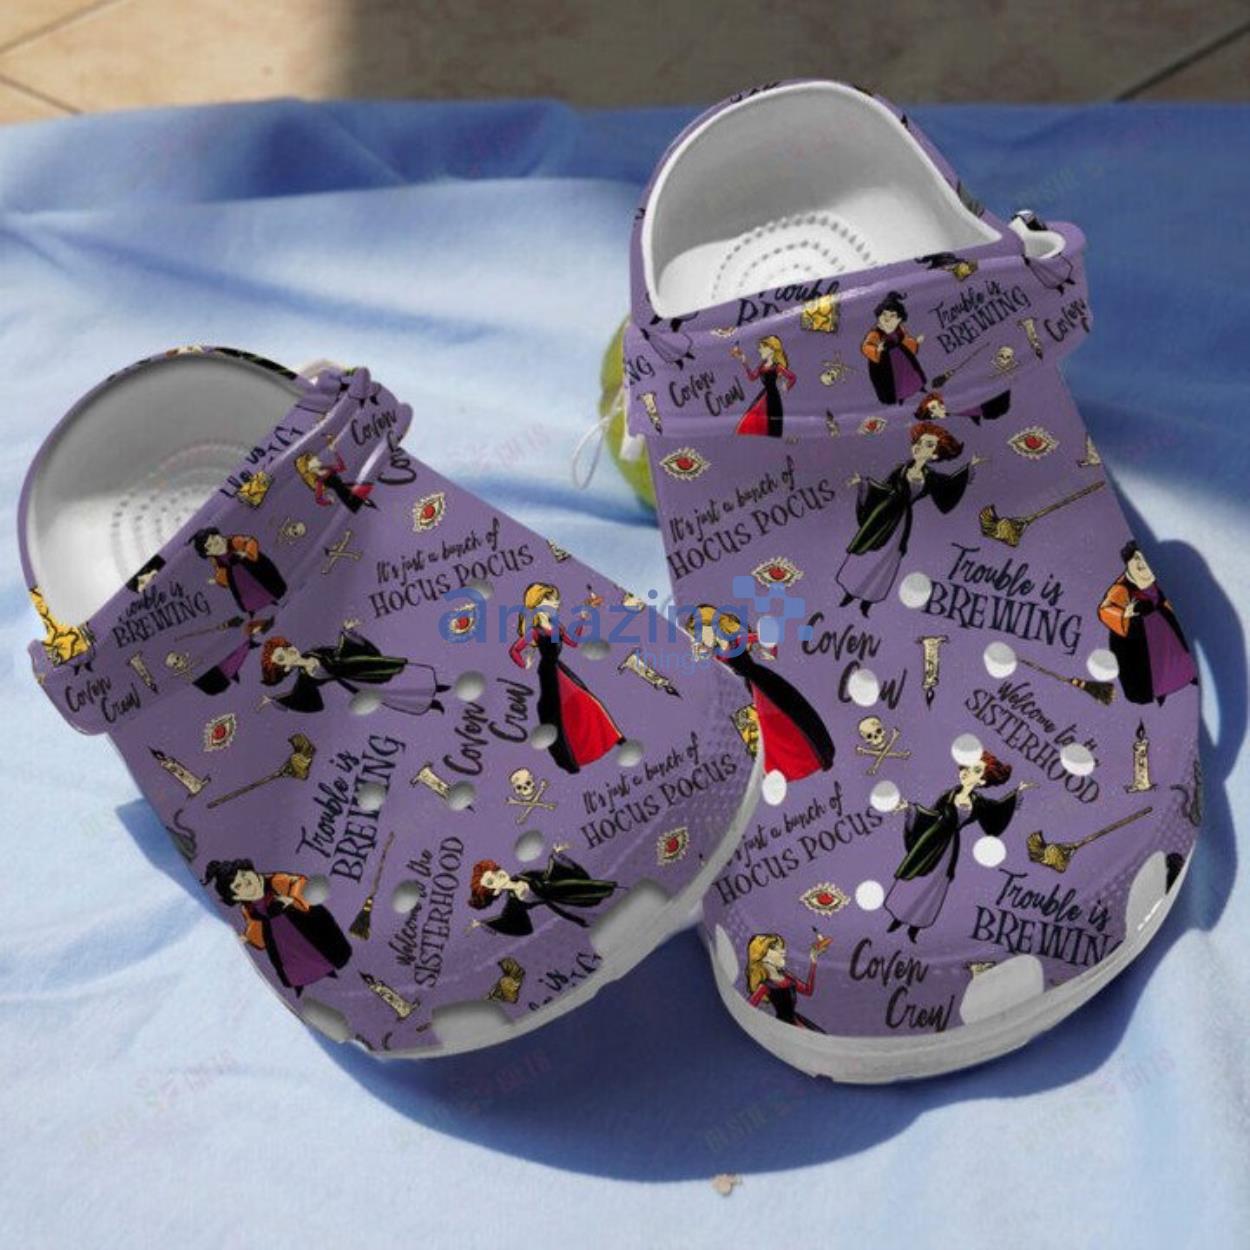 Hocus Pocus Disney Crocs Shoes For Men And Women Product Photo 1